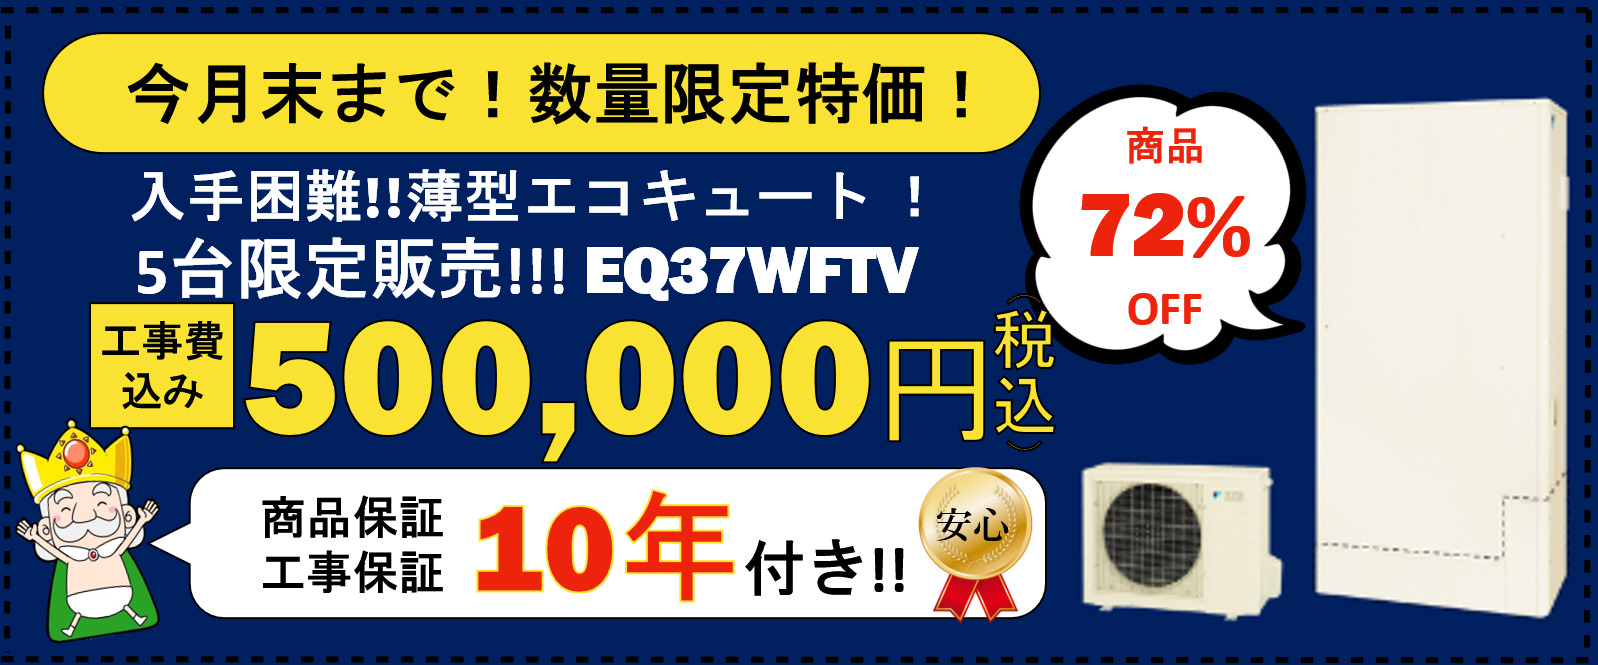 今月末まで!数量限定特価!入手困難!!薄型エコキュート！5台限定販売!!!EQ37WFTV